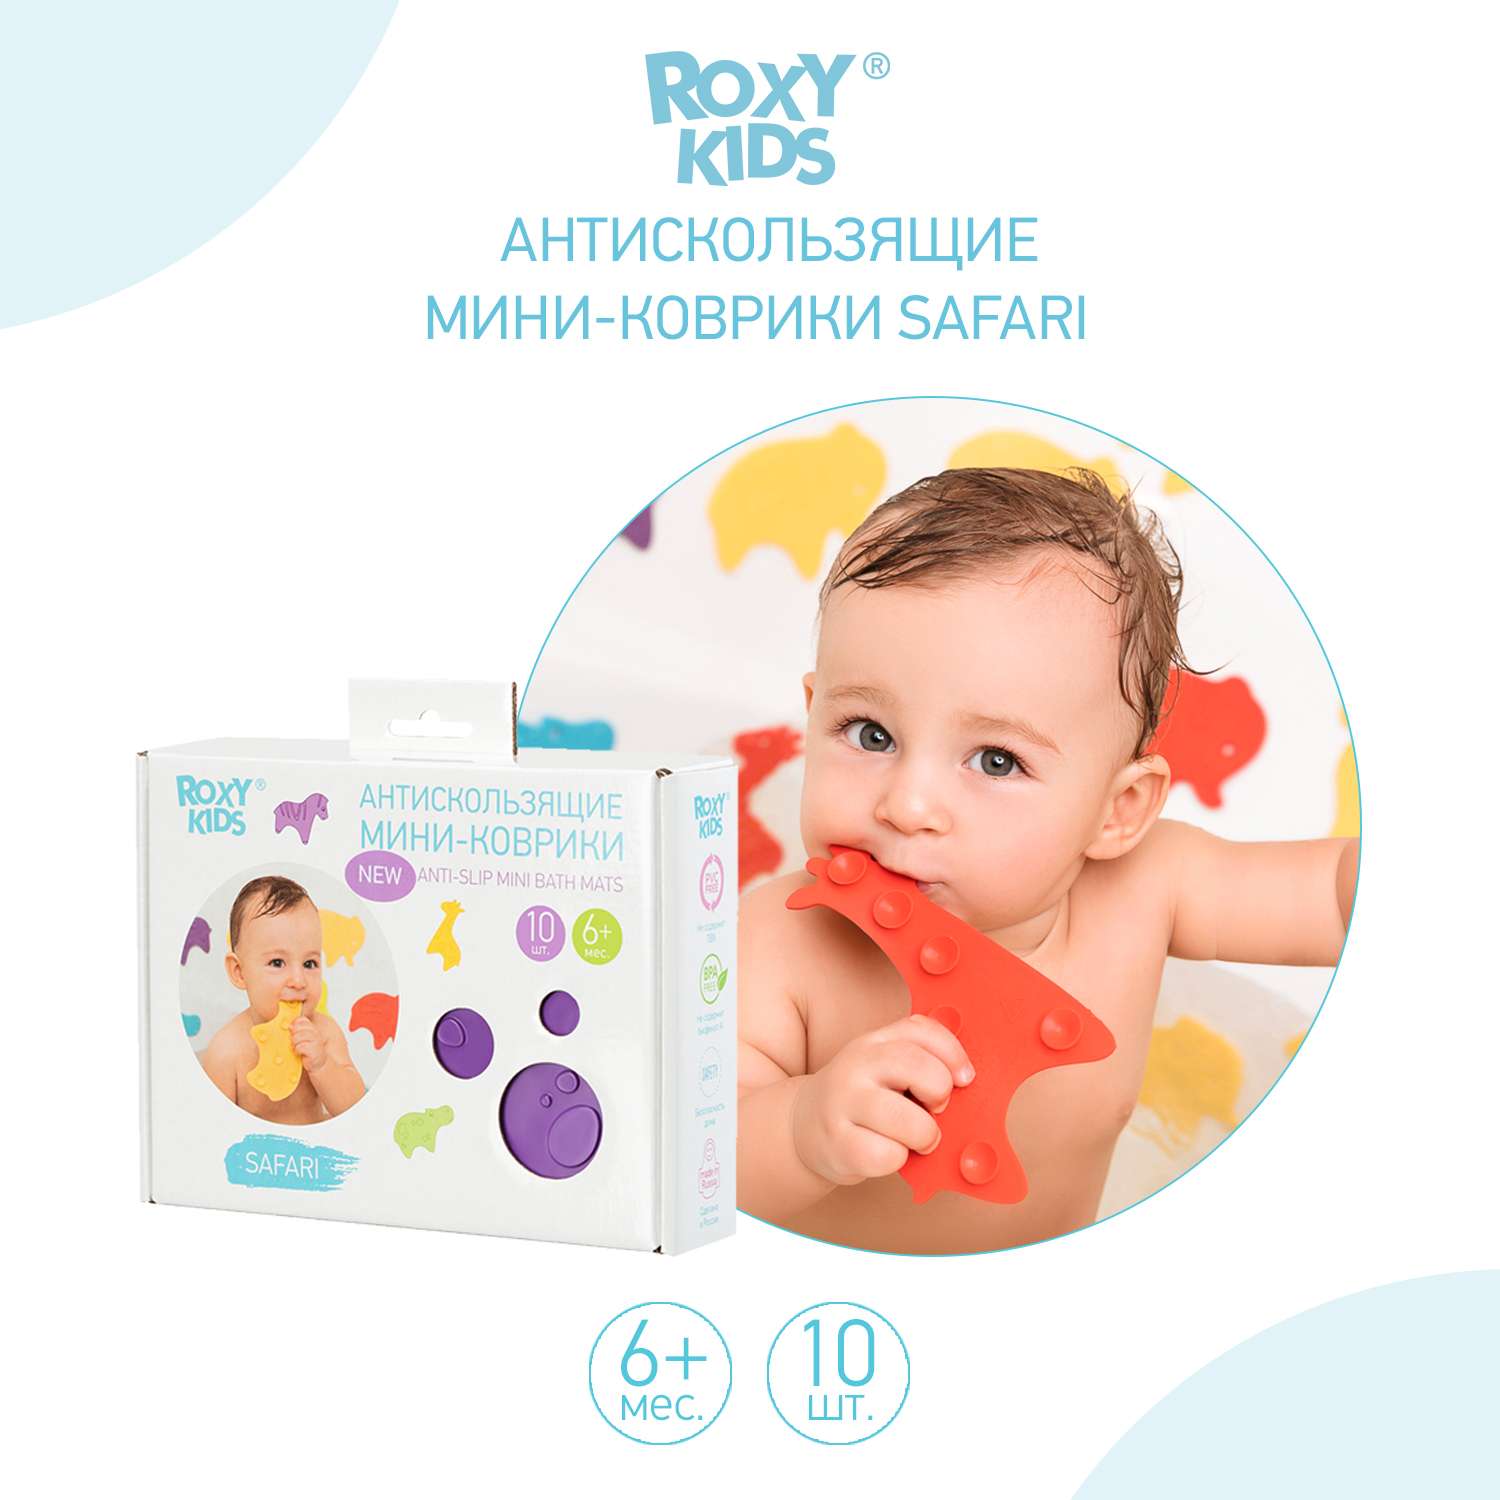 Мини-коврики детские ROXY-KIDS для ванной противоскользящие Safari 10 шт цвета в ассортименте - фото 2